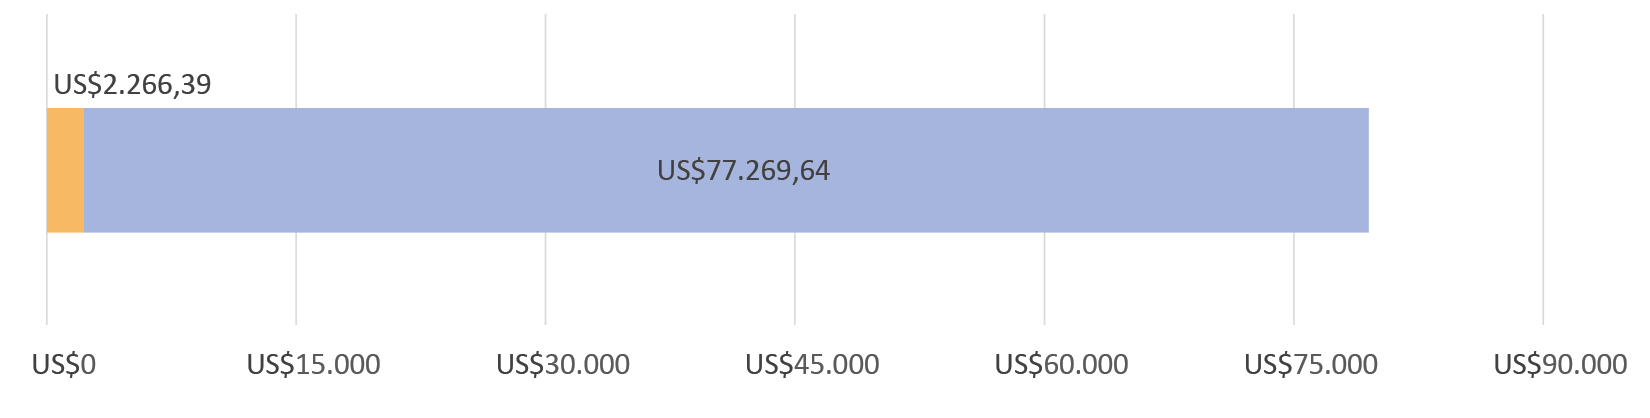 US$2.266,39 gastados; quedan US$77.269,64